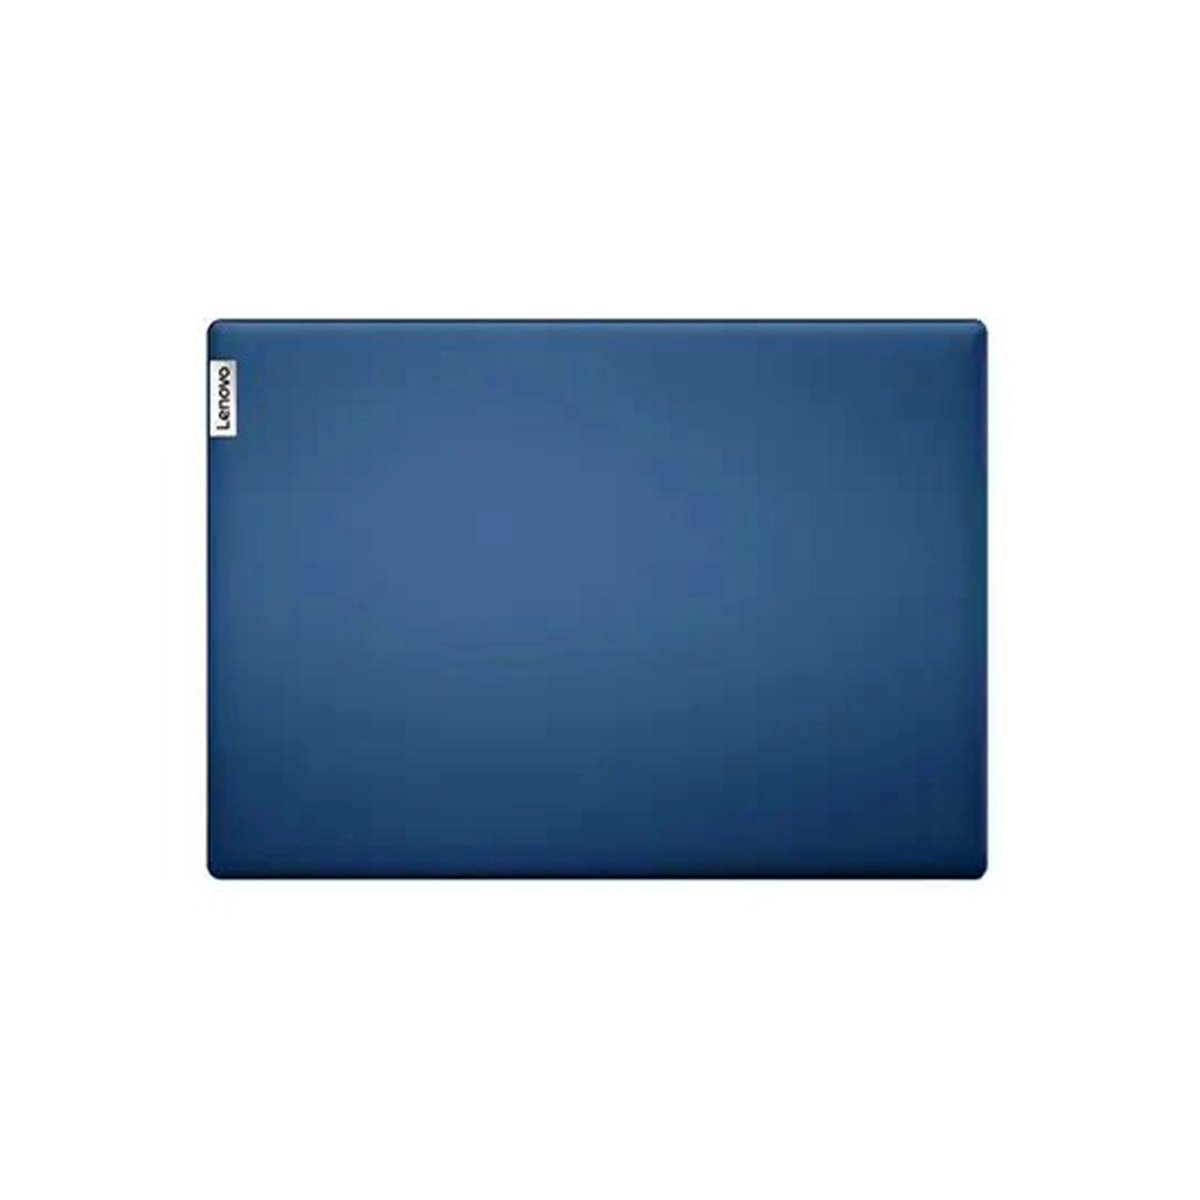 لينوفو لاب توب ايديا باد 1 81VU009HAD - شاشة 14 بوصة FHD ، الجيل العاشر انتل سيليرون N4020 ، ذاكرة وصول عشوائي 4 جيجا ، 128 SSD ، بطاقة رسومات انتل UHD ، أزرق ثلجي